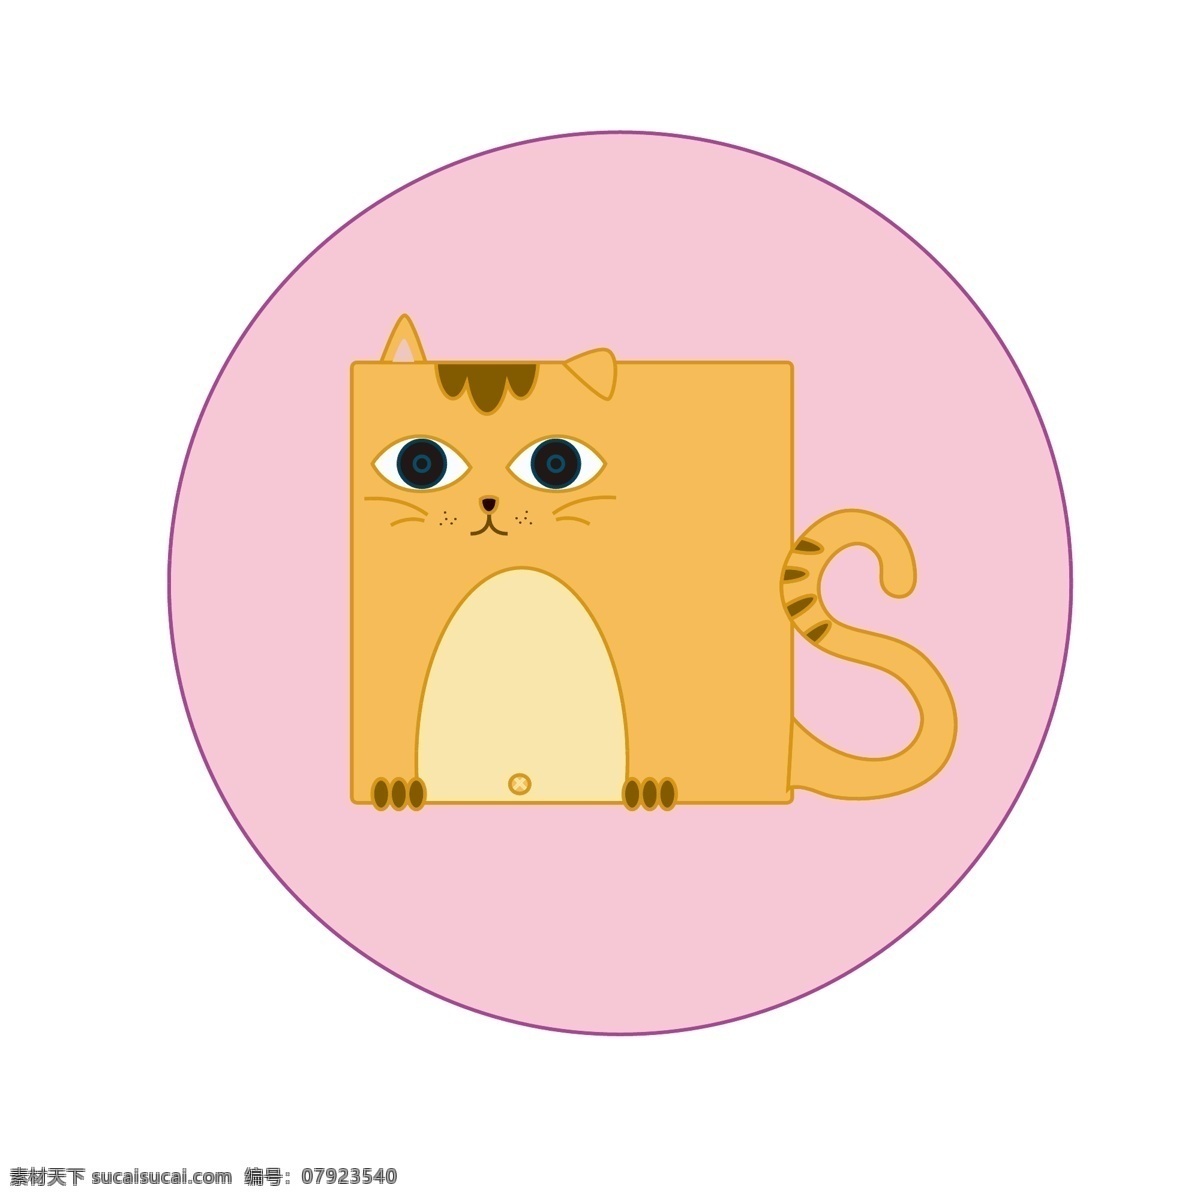 趣味 卡通 扁平化 方形 动物 猫咪 形象 插图 元素 可爱 插画 粉色 动物形象 矢量 橘猫 大橘为重